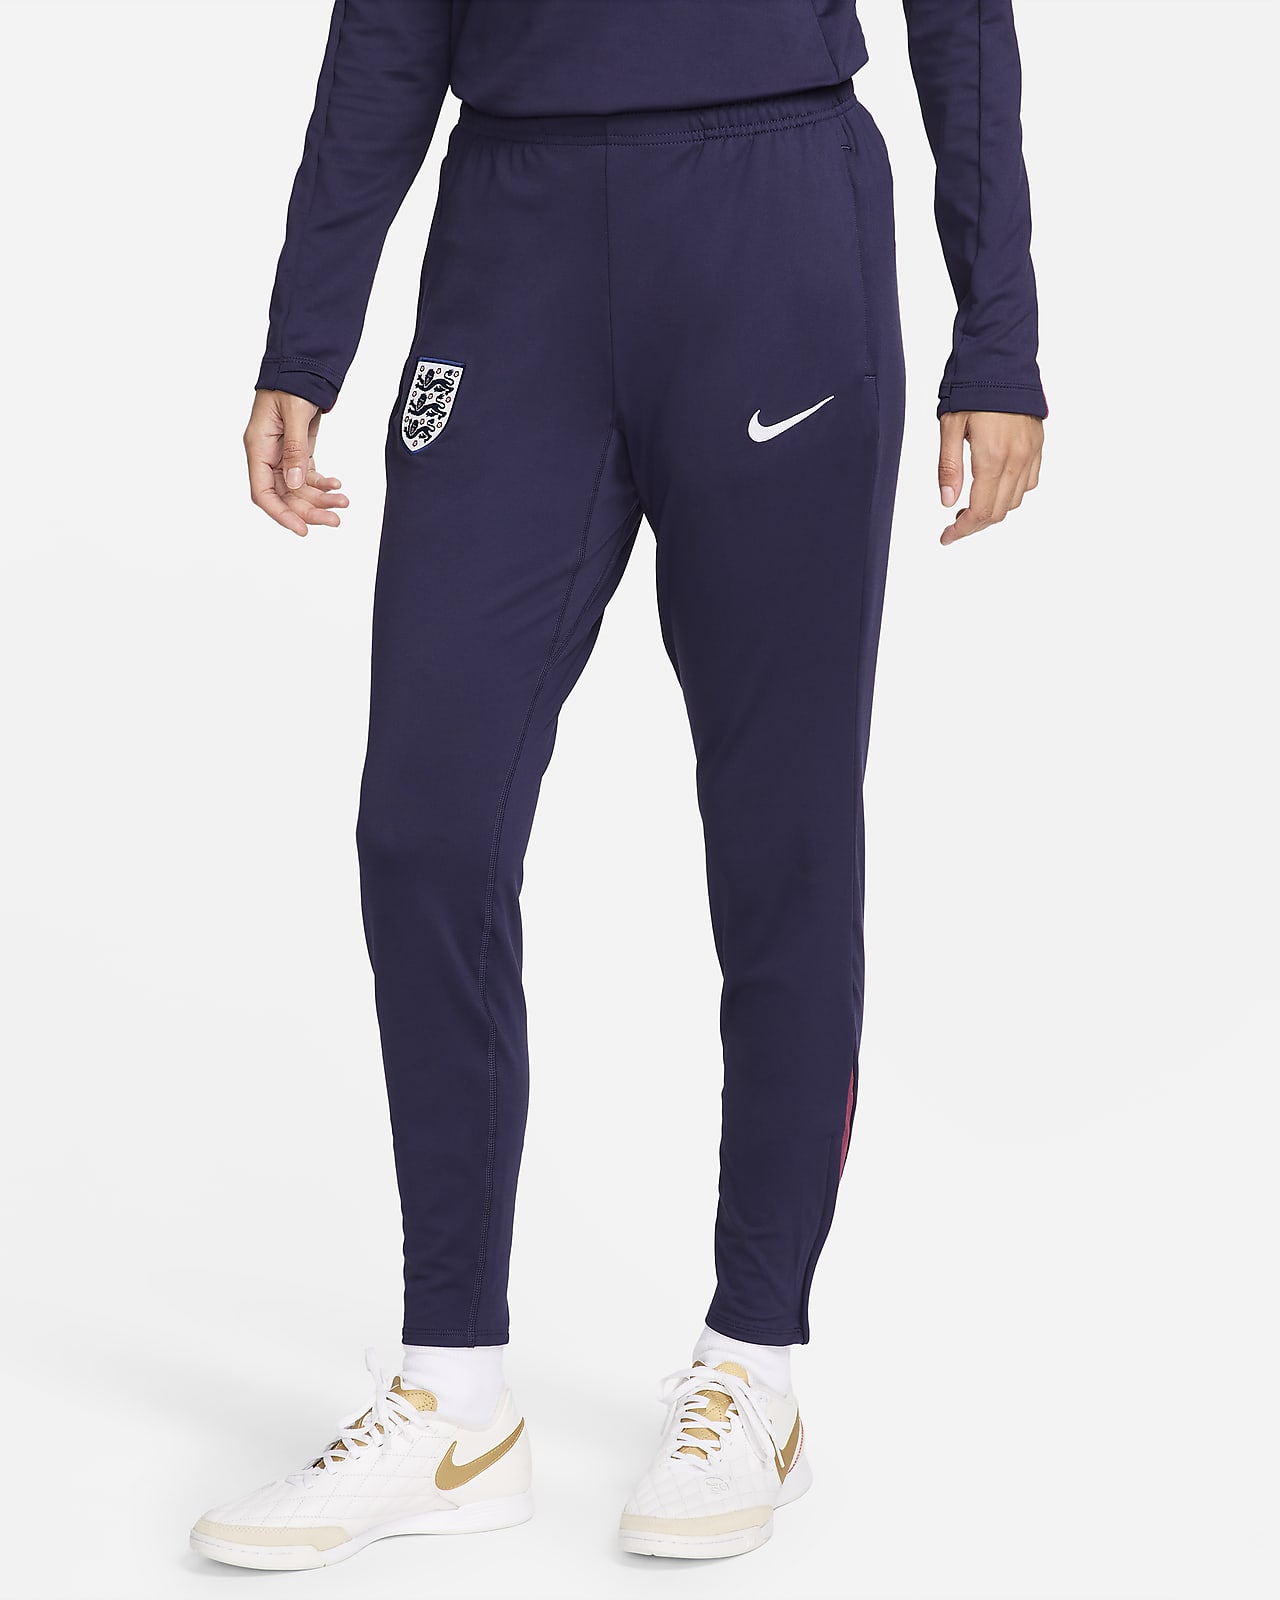 Γυναικείο ποδοσφαιρικό πλεκτό παντελόνι Αγγλία Nike Dri-FIT Strike